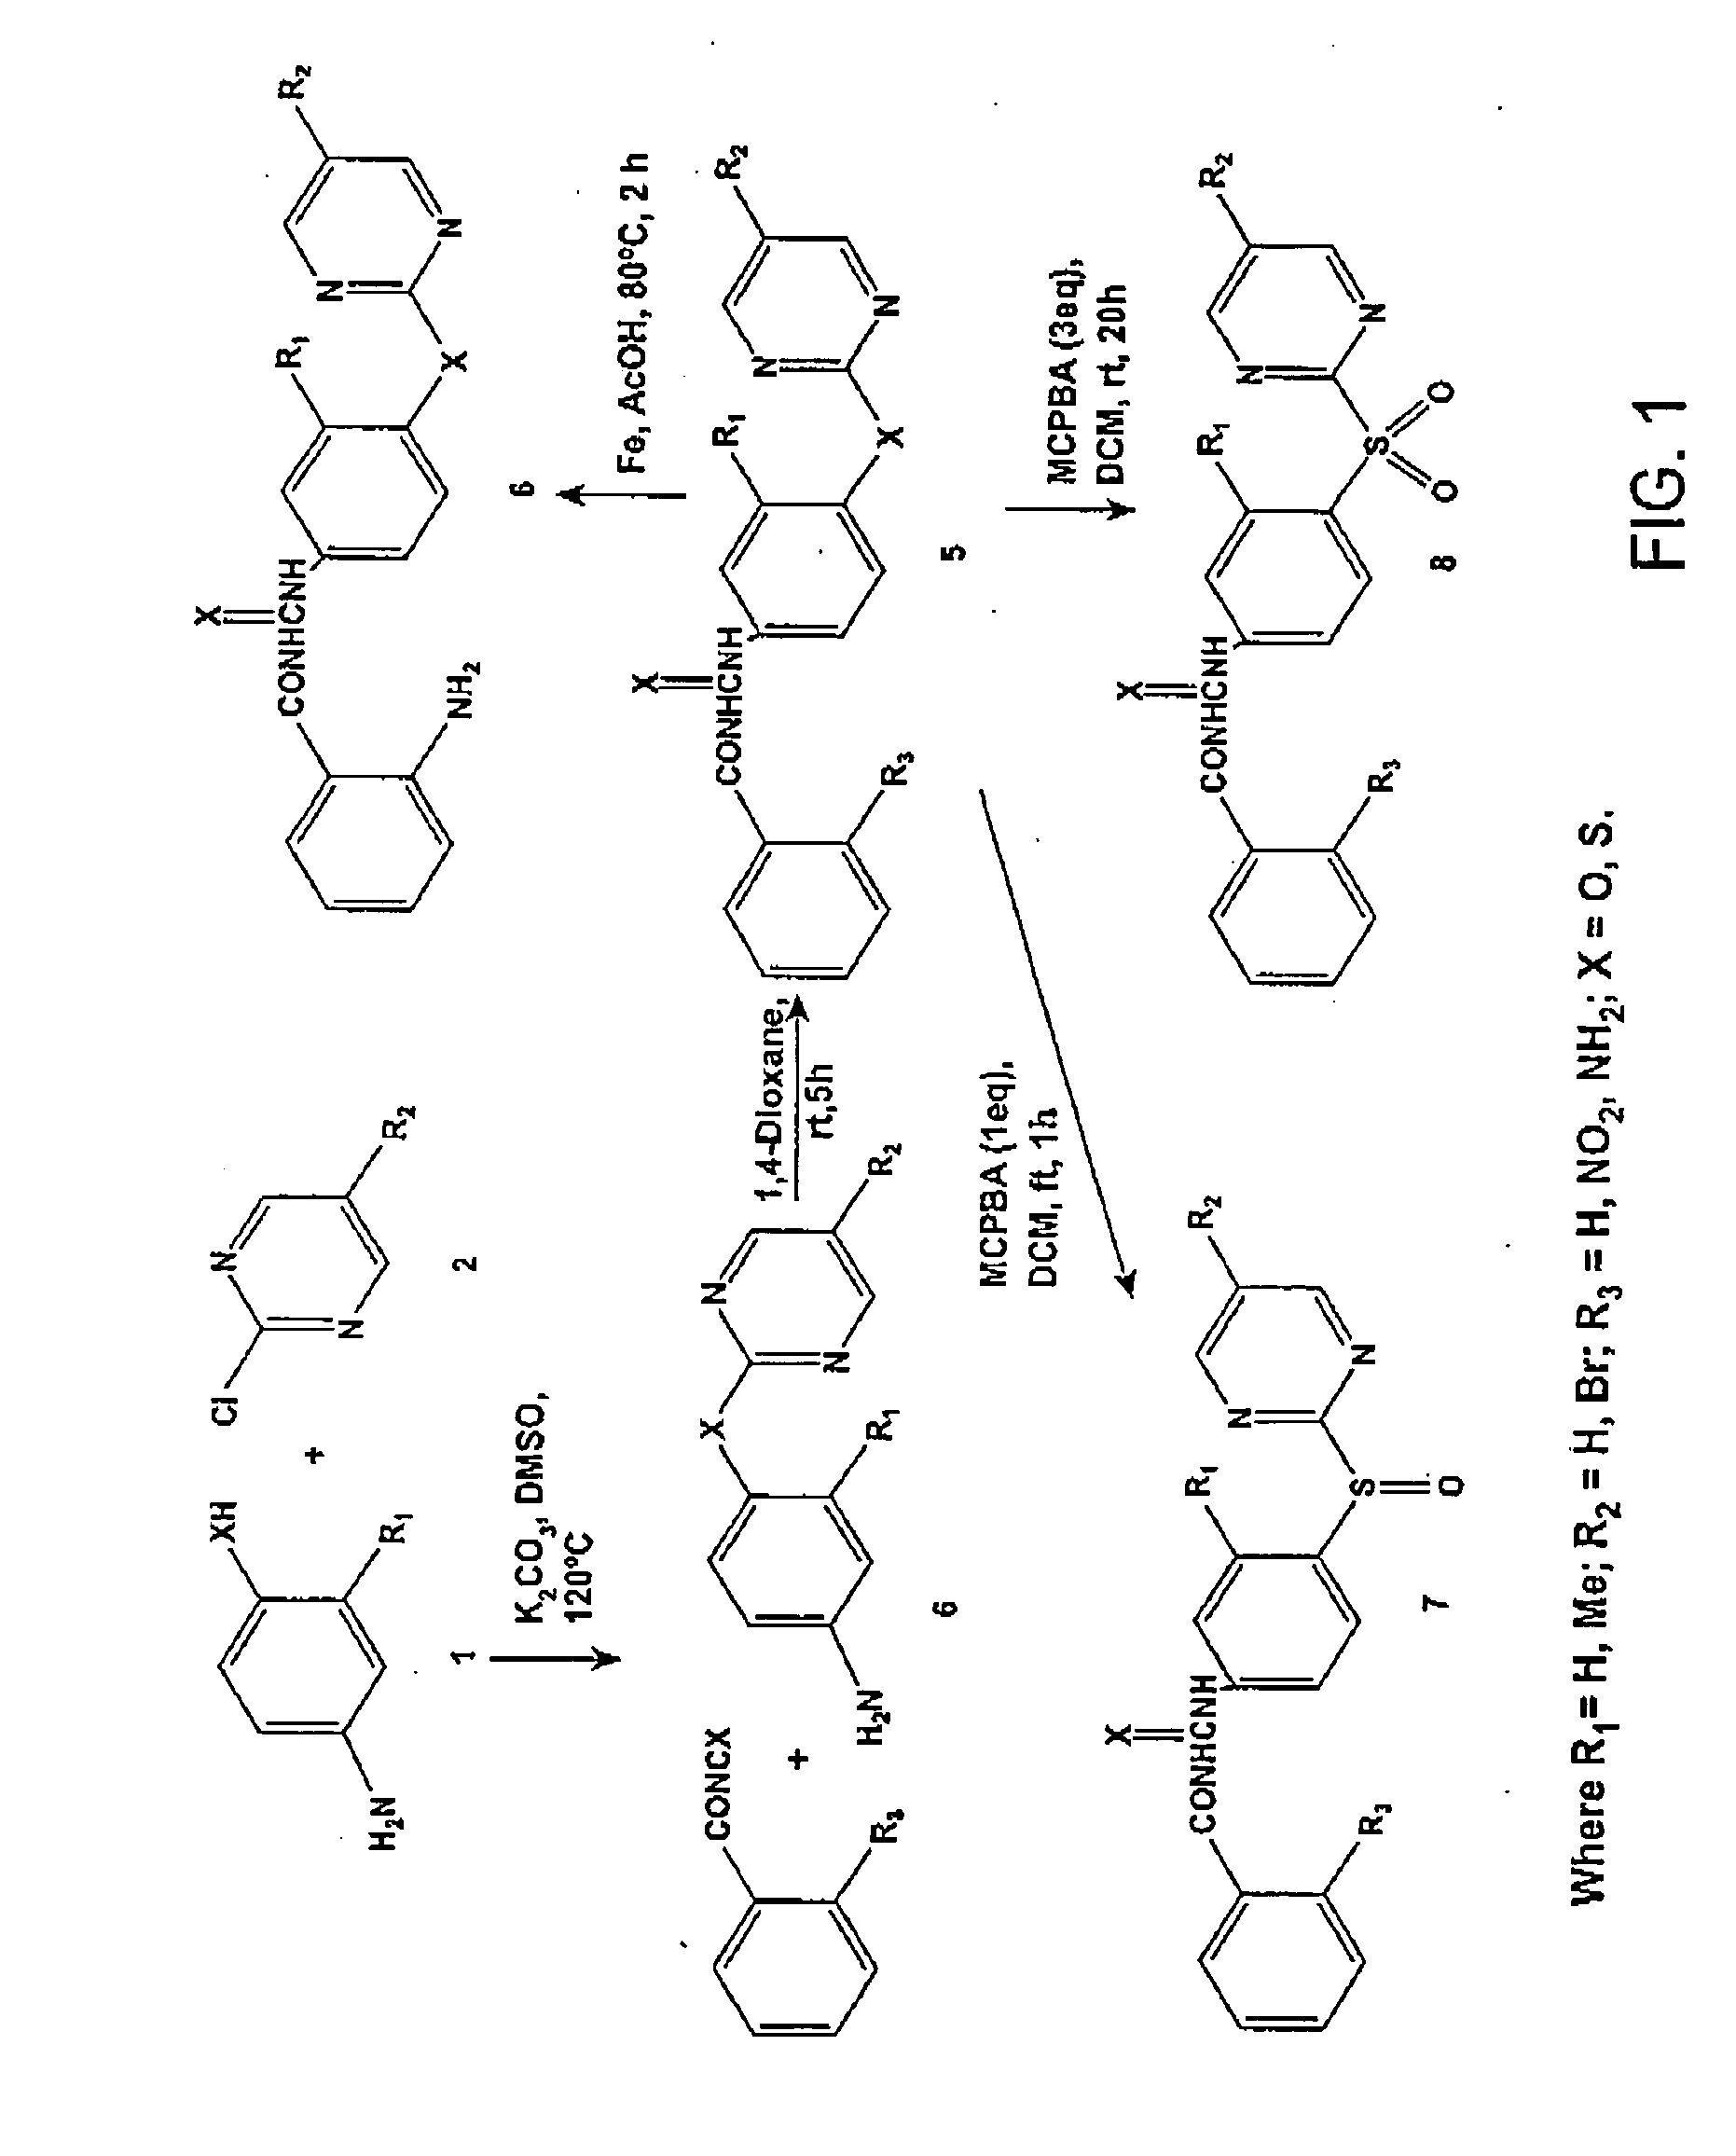 Design and synthesis of novel tubulin polymerization inhibitors: benzoylphenylurea (BPU) sulfur analogs